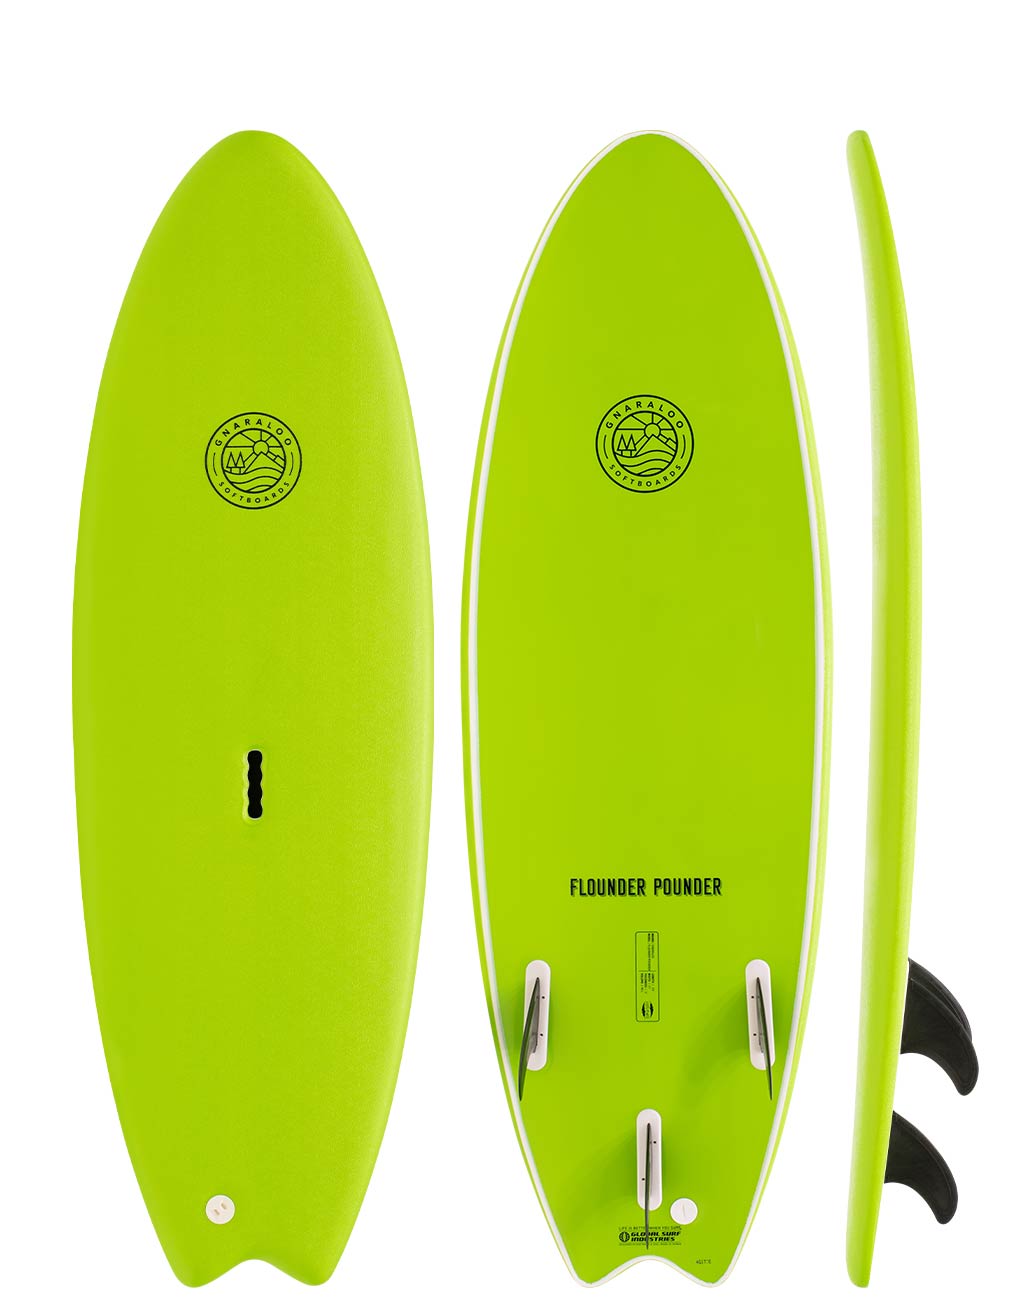 Gnaraloo soft surfboards - Flounder Pounder lime surfboard